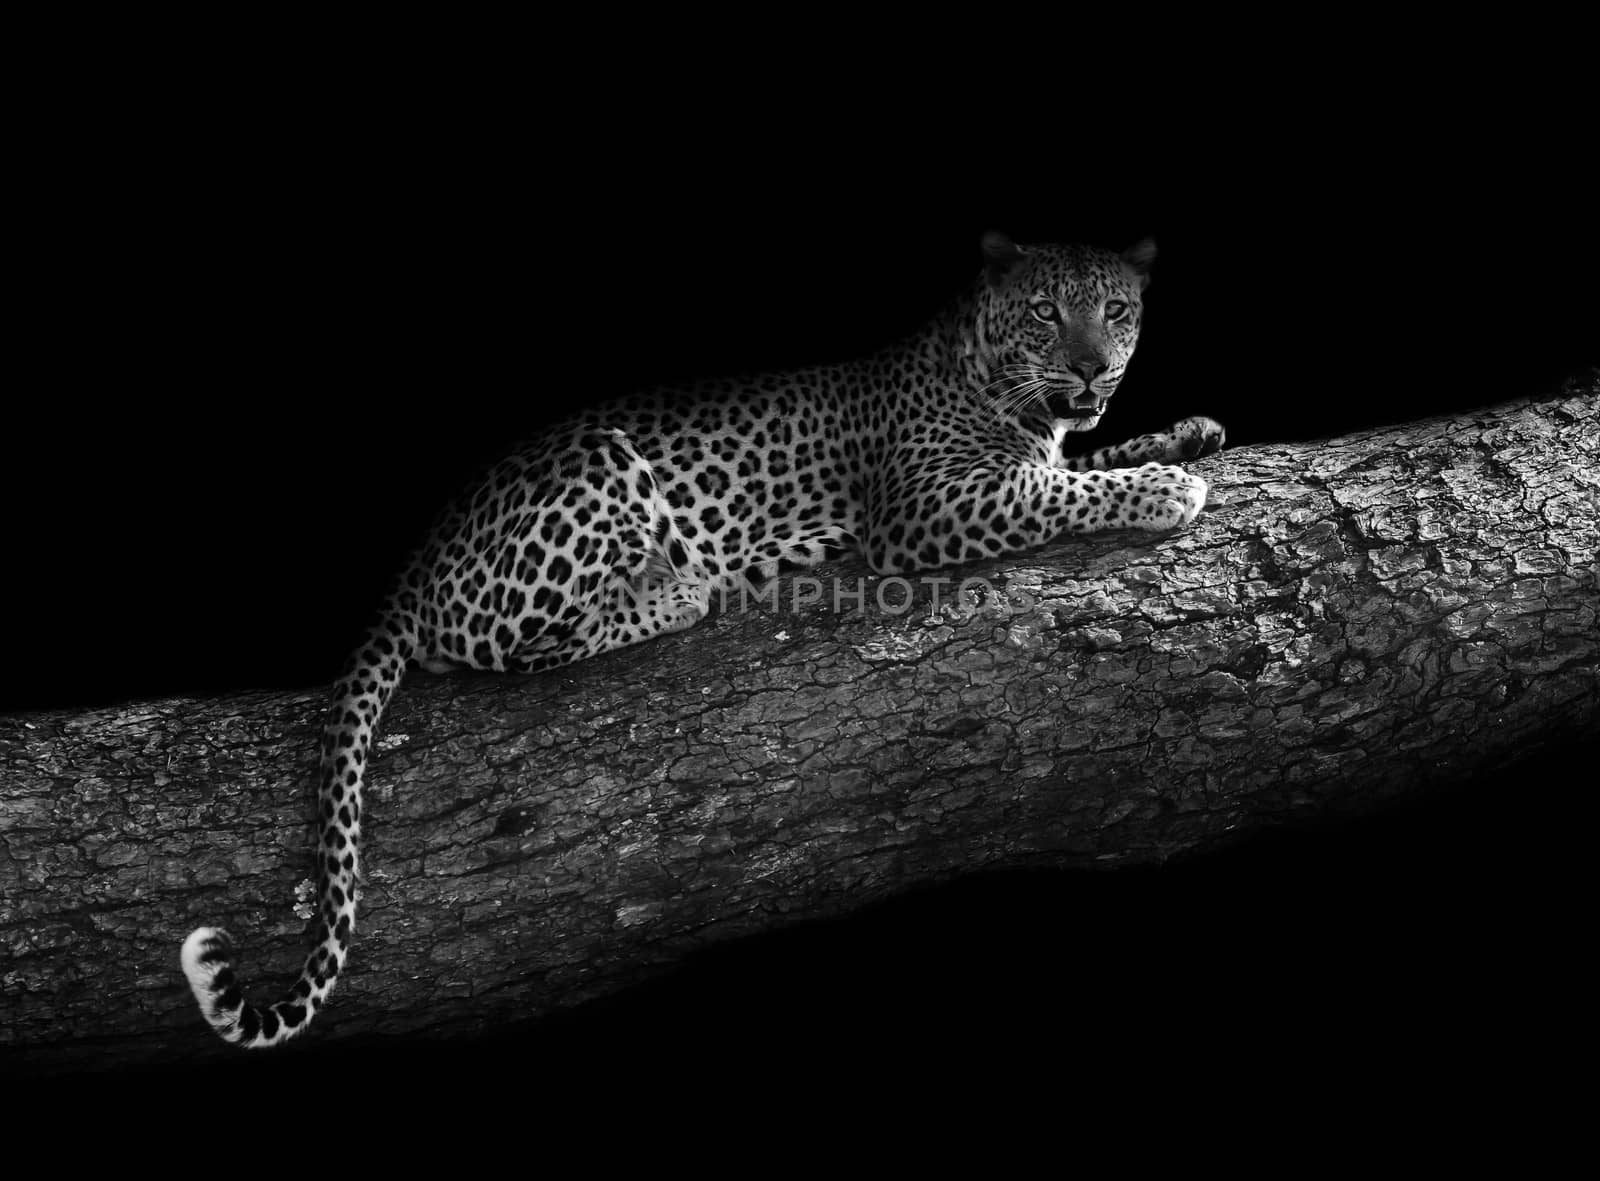 Leopard in a tree (artistic edit) by donvanstaden